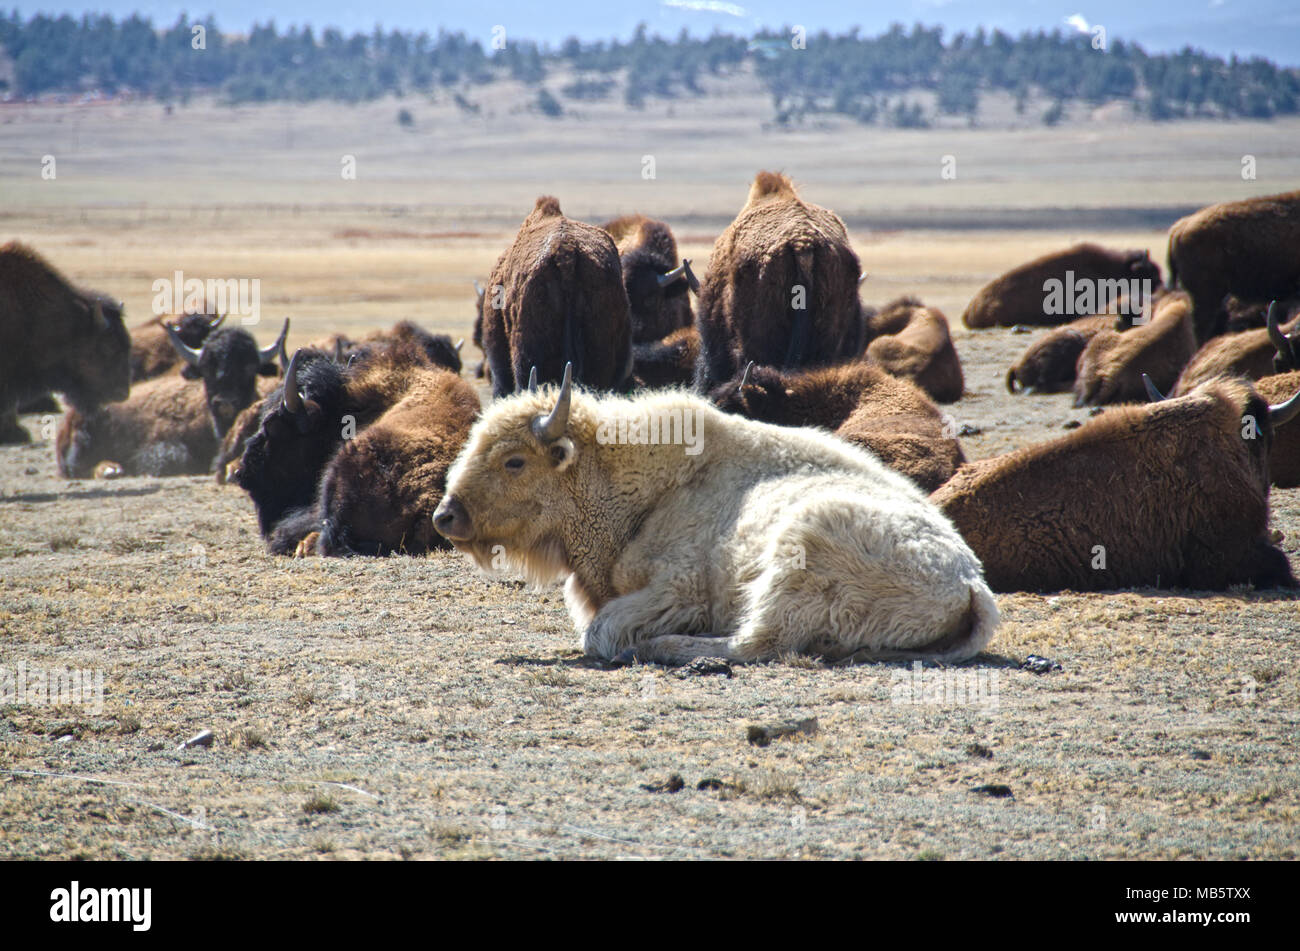 Un bisonte o búfalo blanco, pensado para ser sagrado para muchas tribus de indios nativos americanos, sentada con su rebaño cerca Hartsel, Colorado. Foto de stock